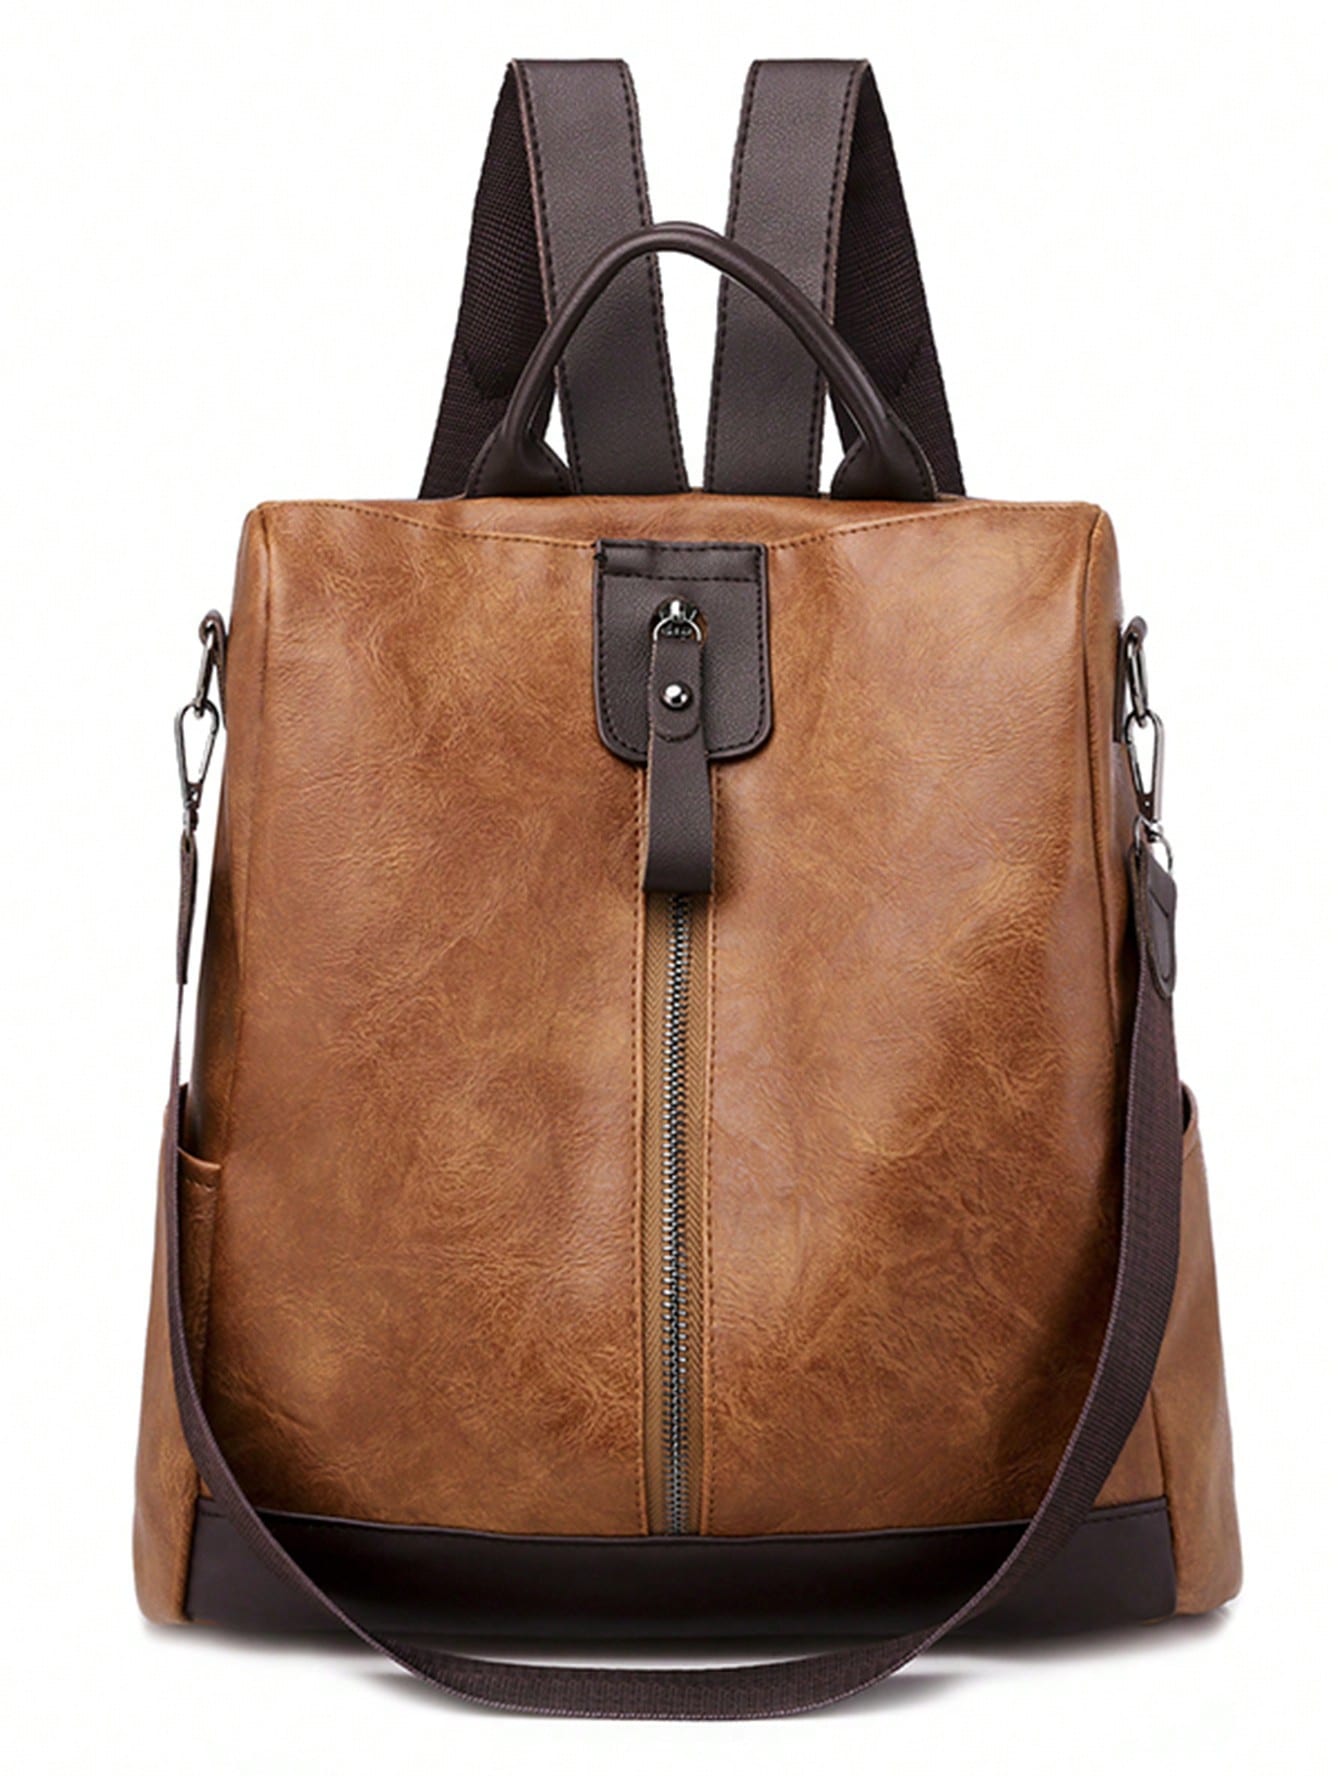 Модный брендовый модный универсальный повседневный рюкзак, коричневый рюкзак женский из мягкой кожи сумочка на плечо в стиле ретро повседневный дорожный ранец с карманами брендовый дизайн